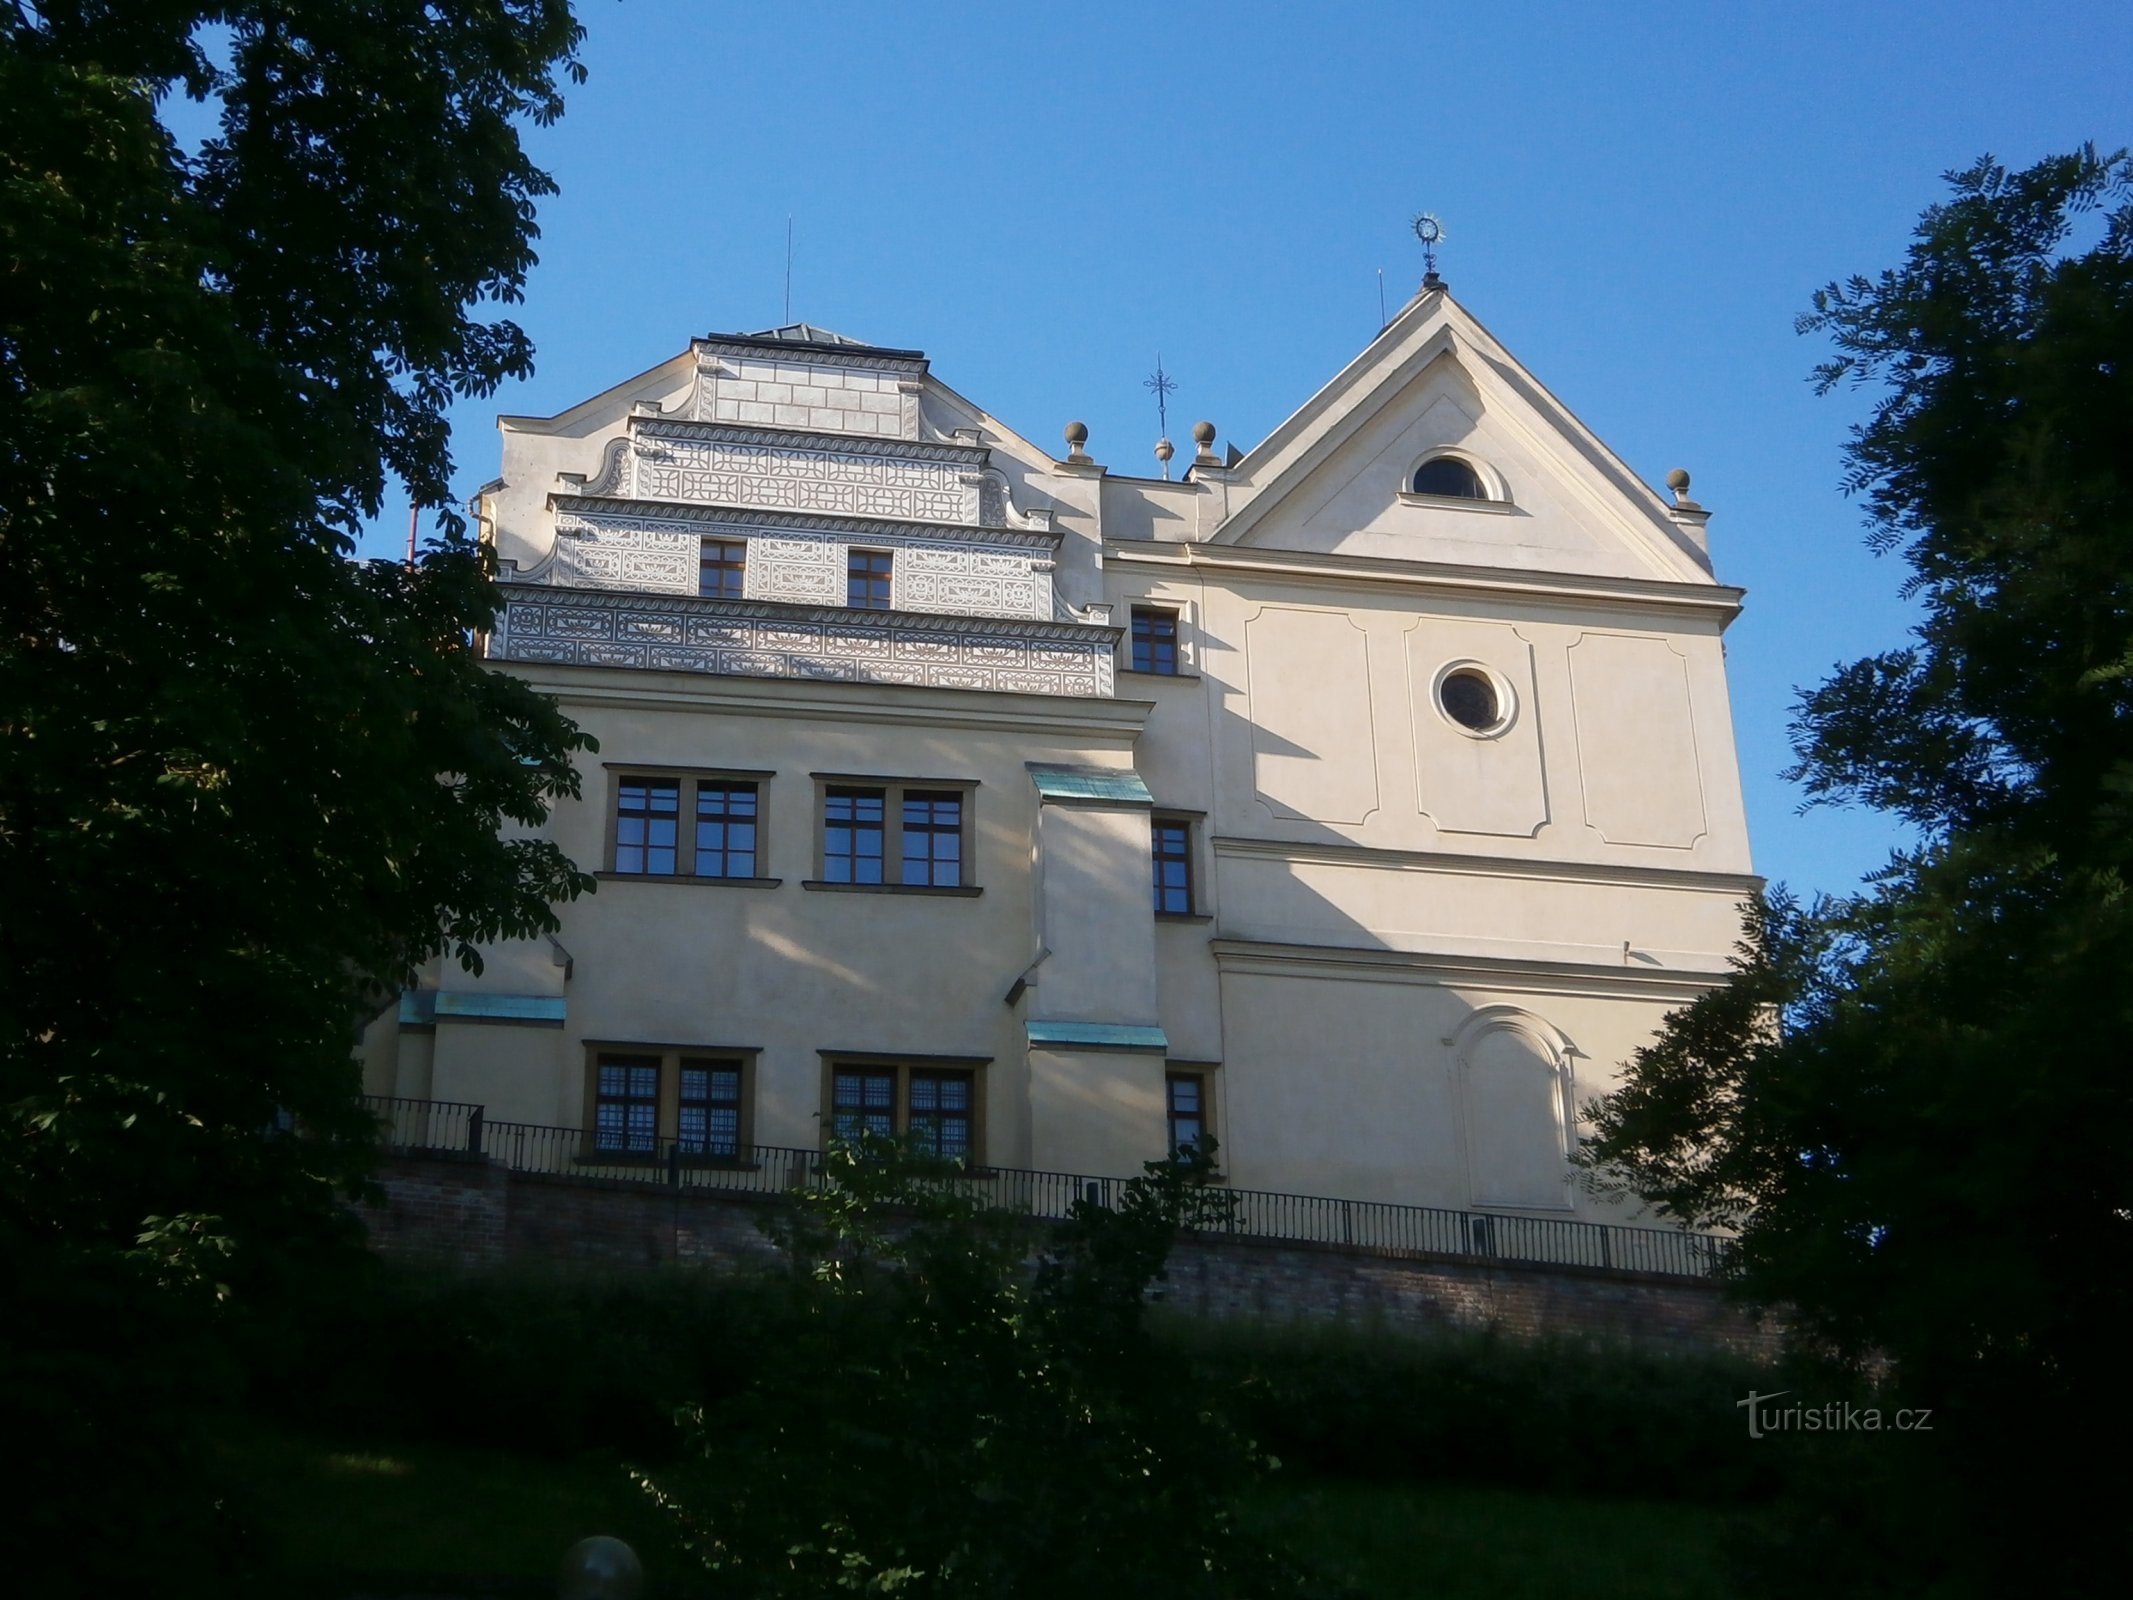 Graščakova hiša s cerkvijo sv. Janeza Nepomuškega (Hradec Králové, 2.7.2016. julij XNUMX)